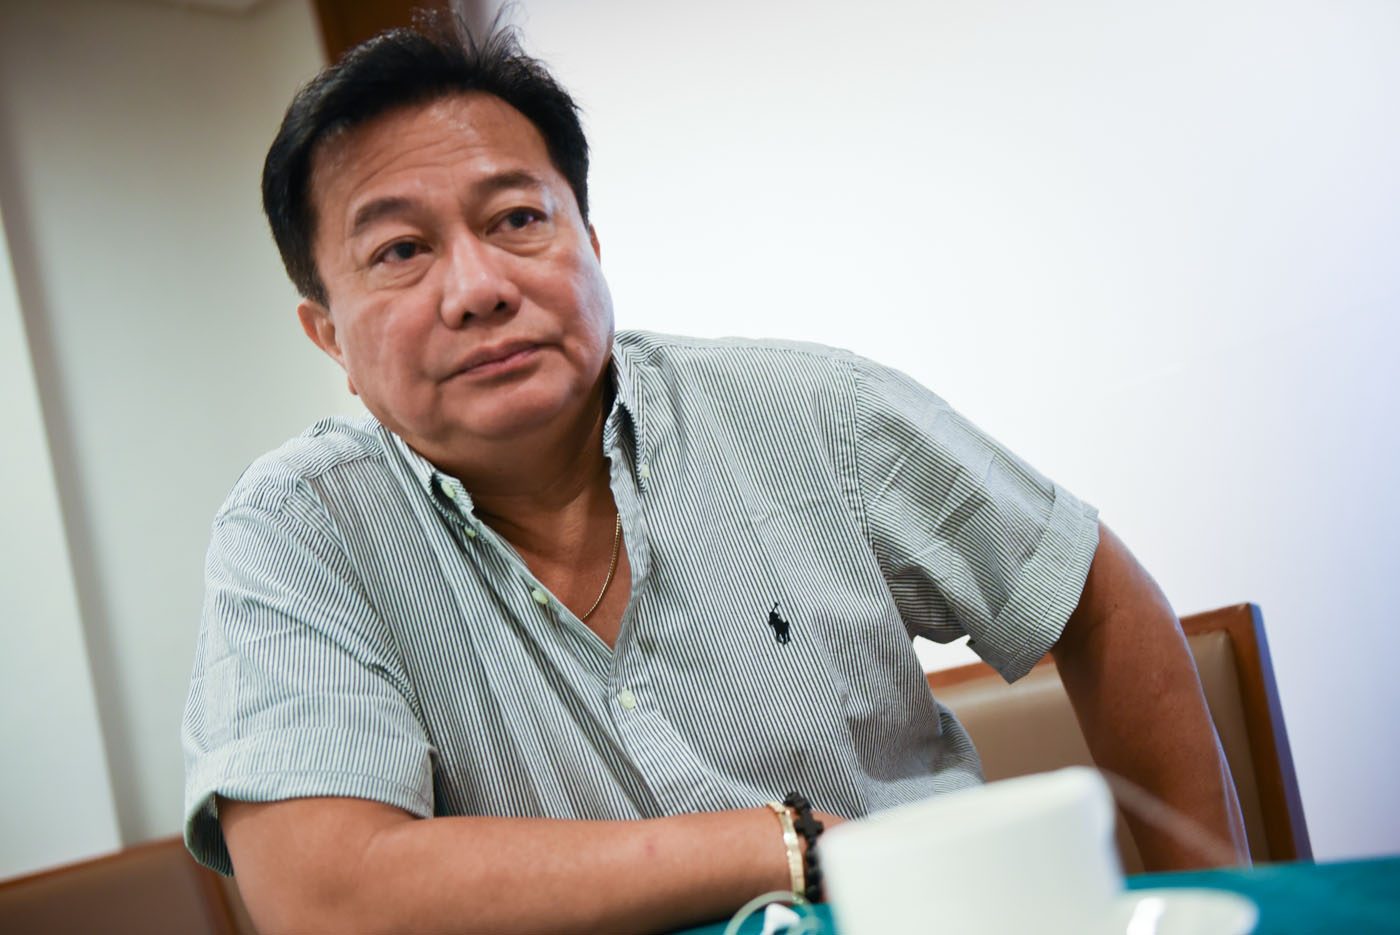 CA showed ‘ignorance of law’ in Ilocos execs detention case – Alvarez